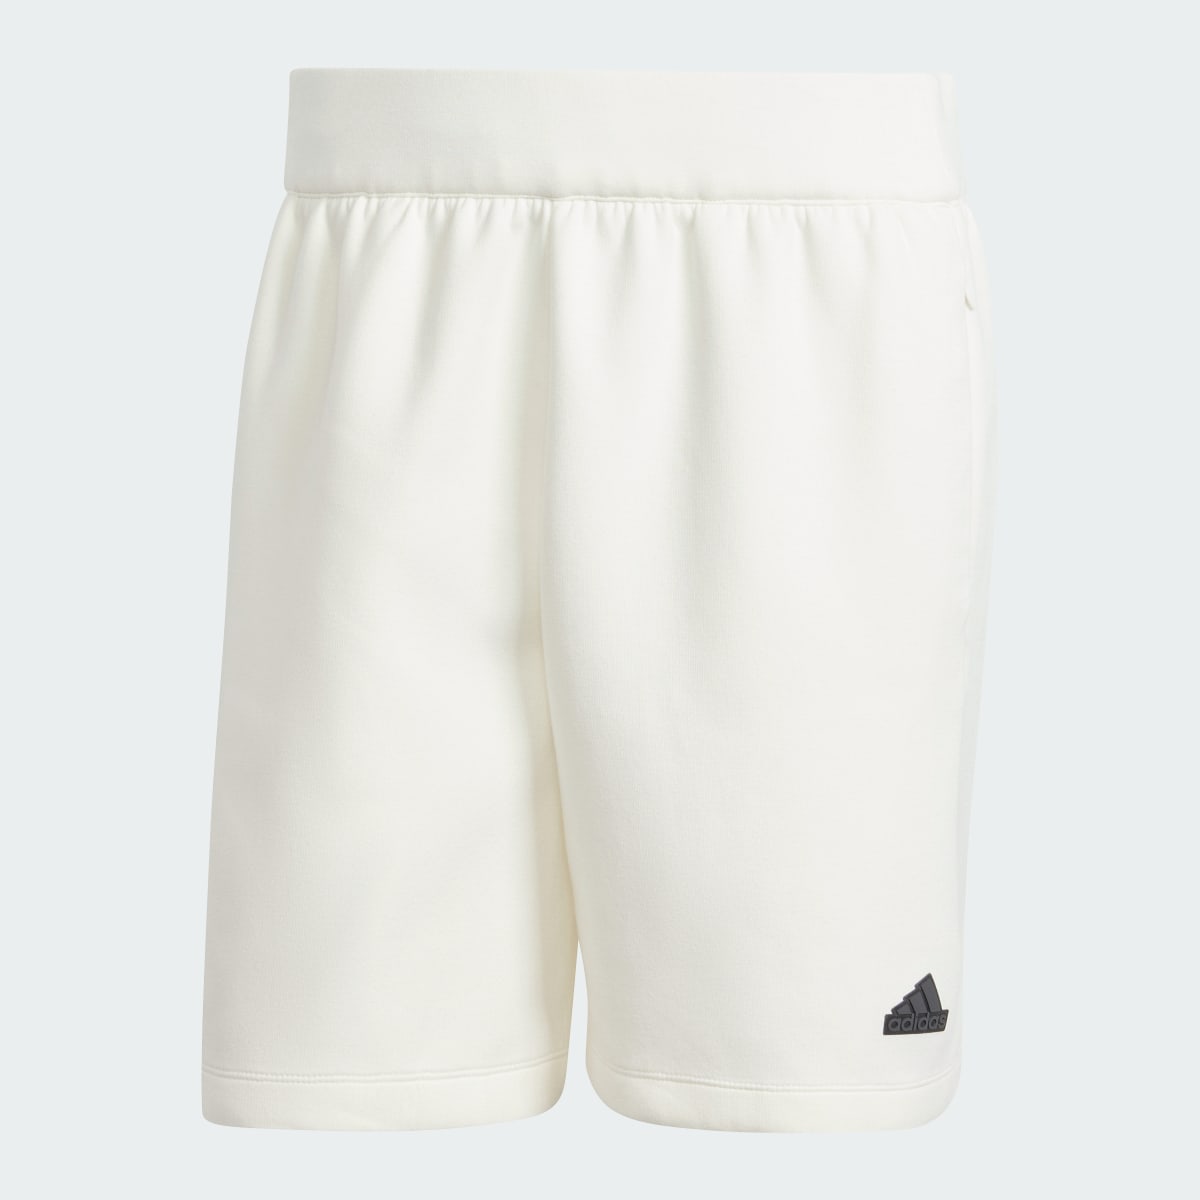 Adidas Z.N.E. Premium Shorts. 4